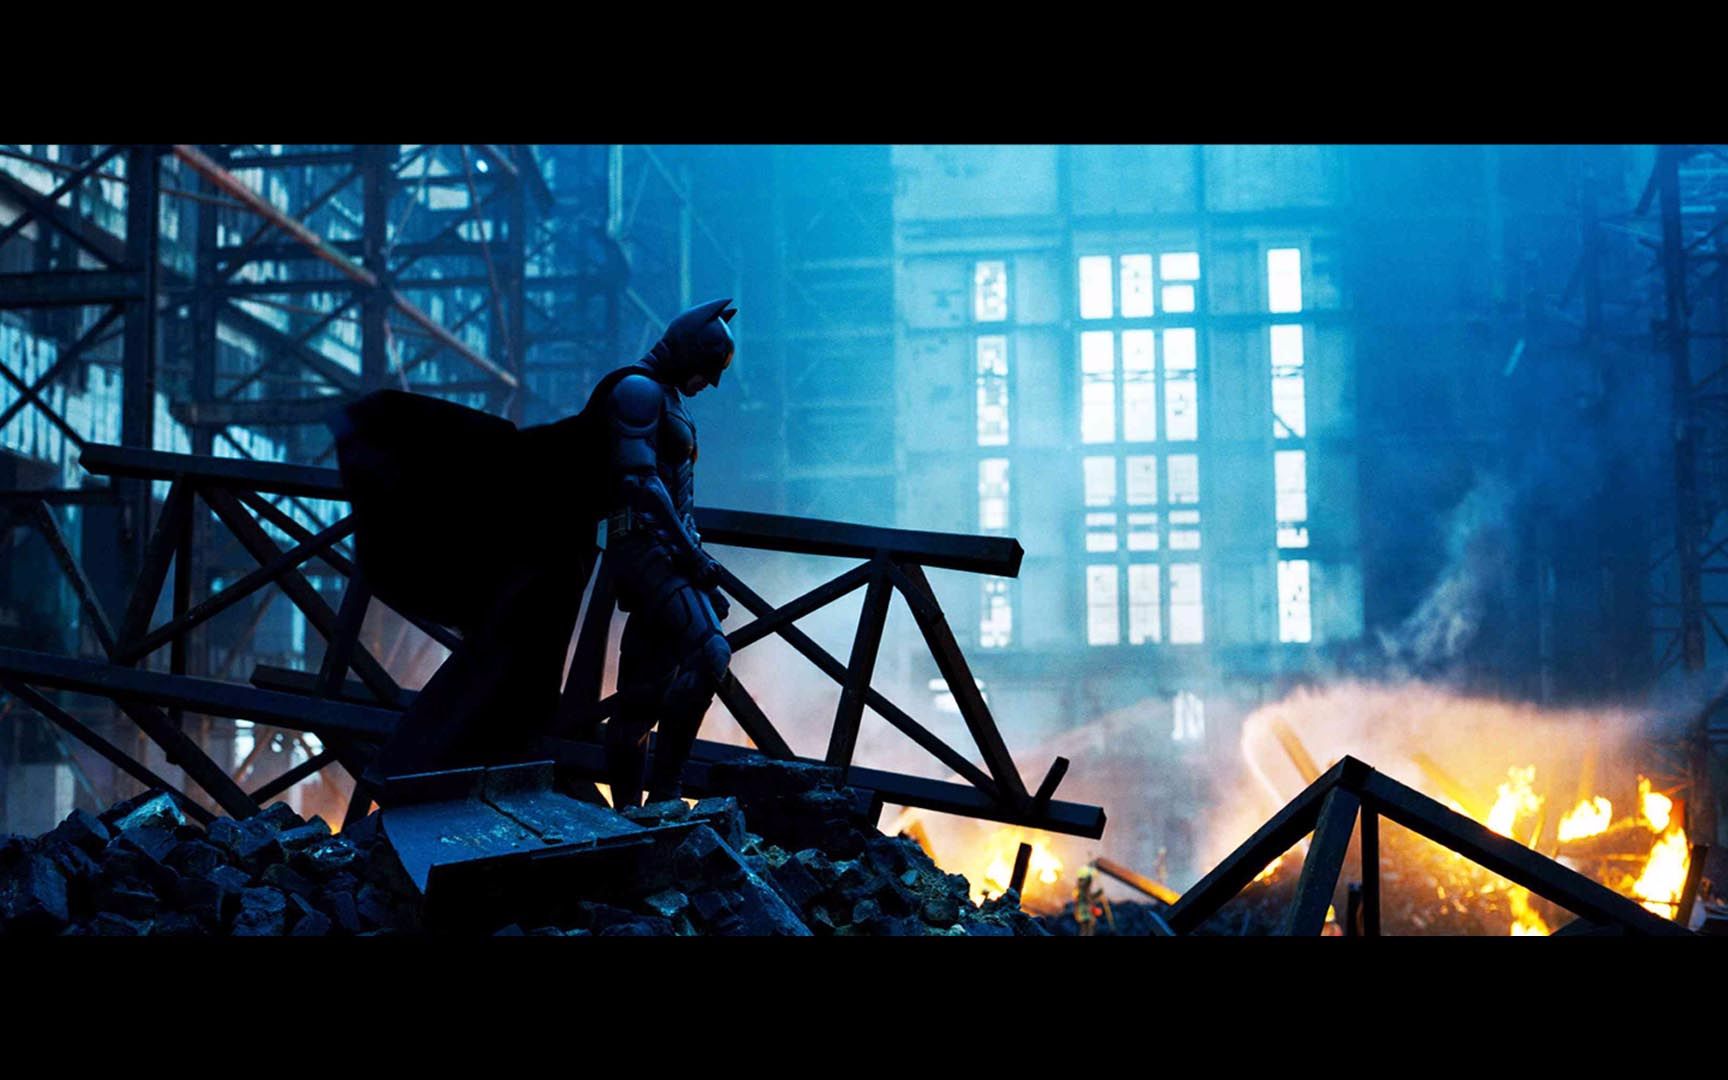 【蝙蝠侠黑暗骑士】任何人都可以成为英雄,哪怕是做了某件不起眼事的